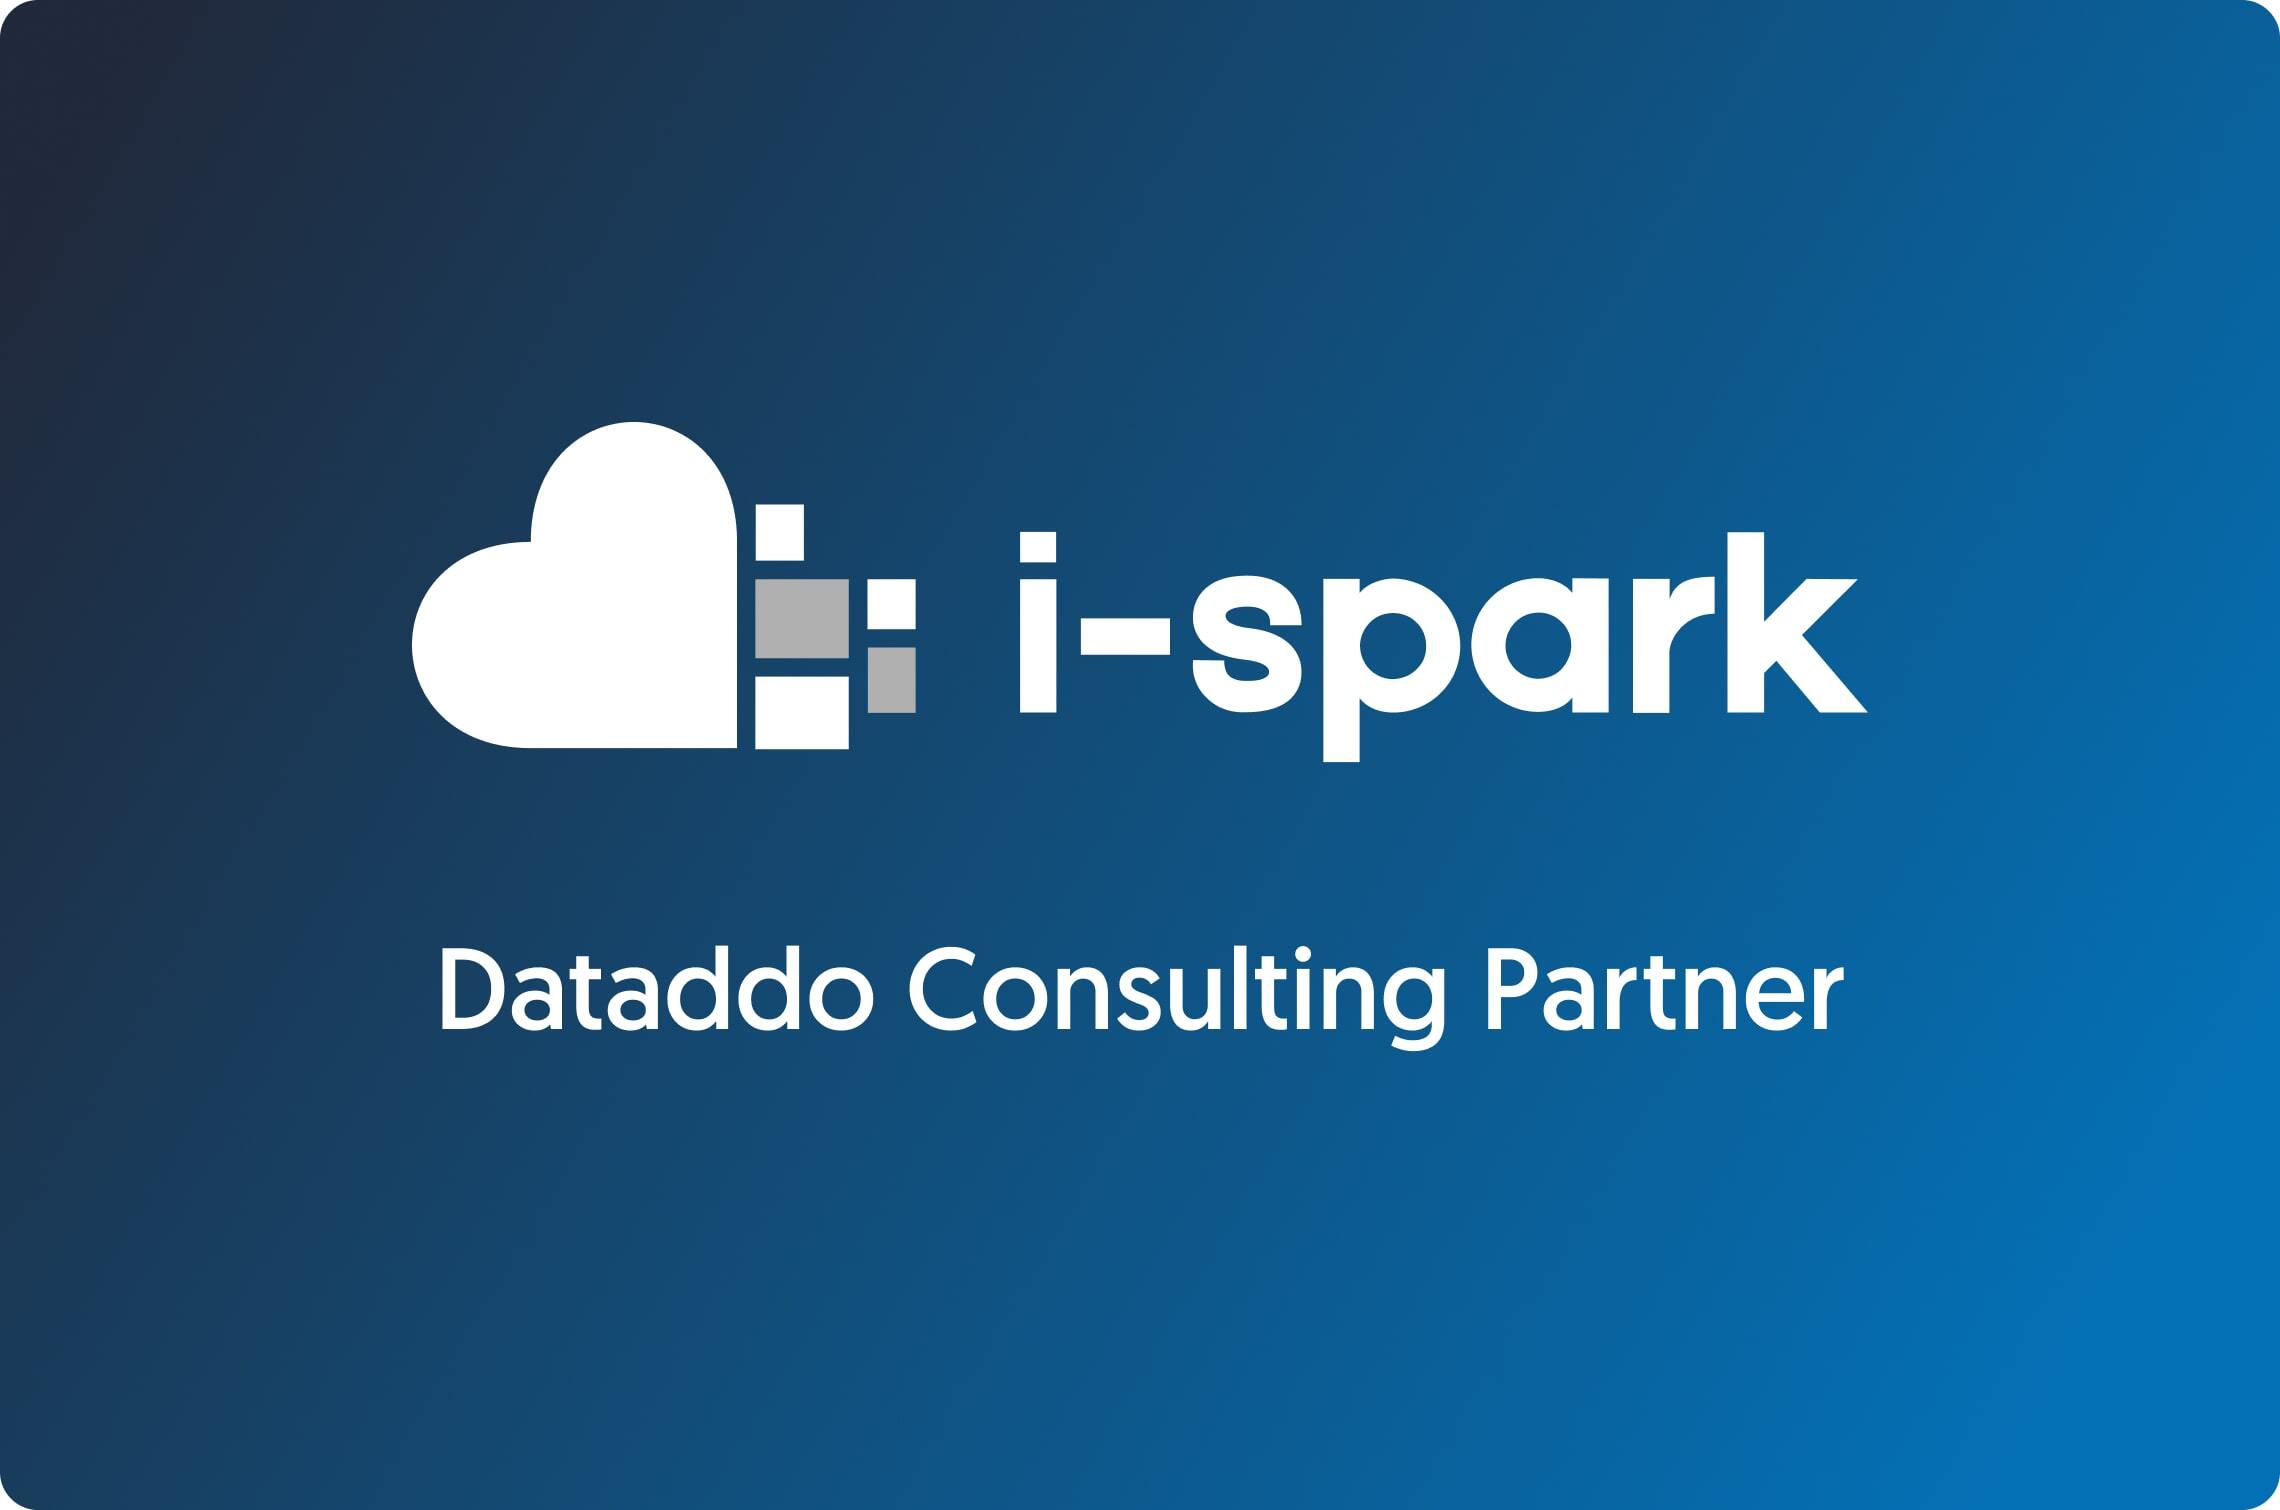 Dataddo로 대규모 통합을 진행하는 데이터 에이전시 i-spark